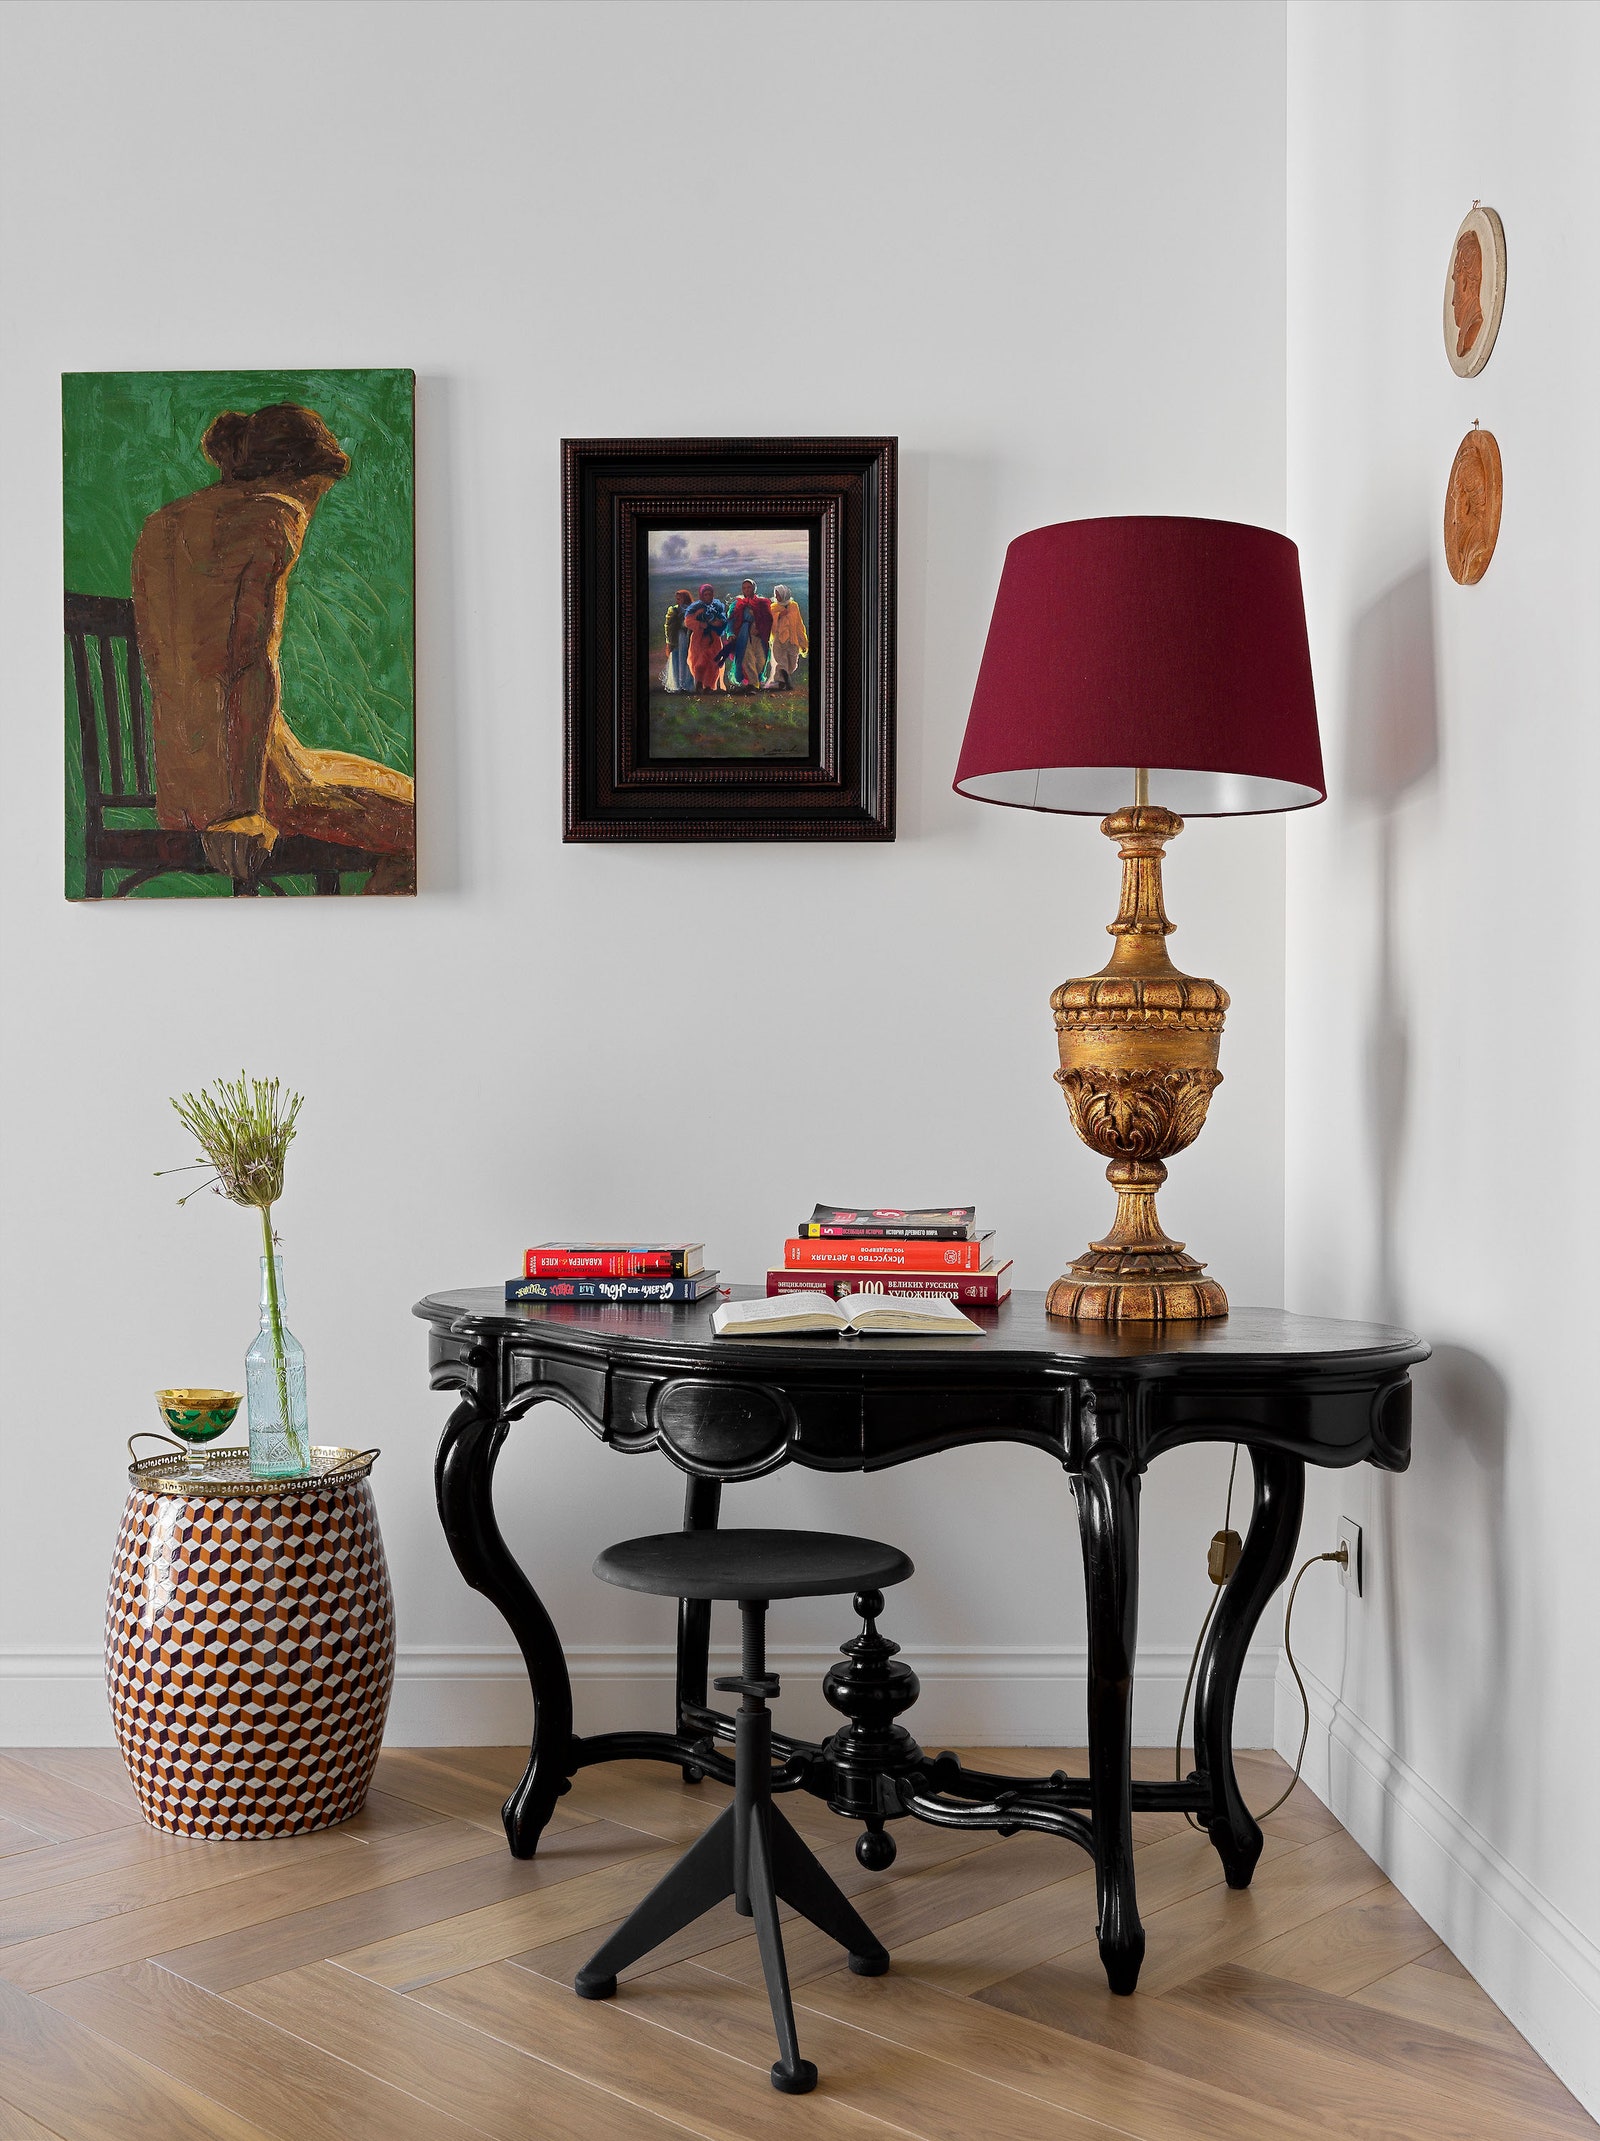 Фрагмент спальни. Слева табурет Asiatides ан­тикварные стол и лампа куплены в Париже картины из коллекции хозяев квартиры.